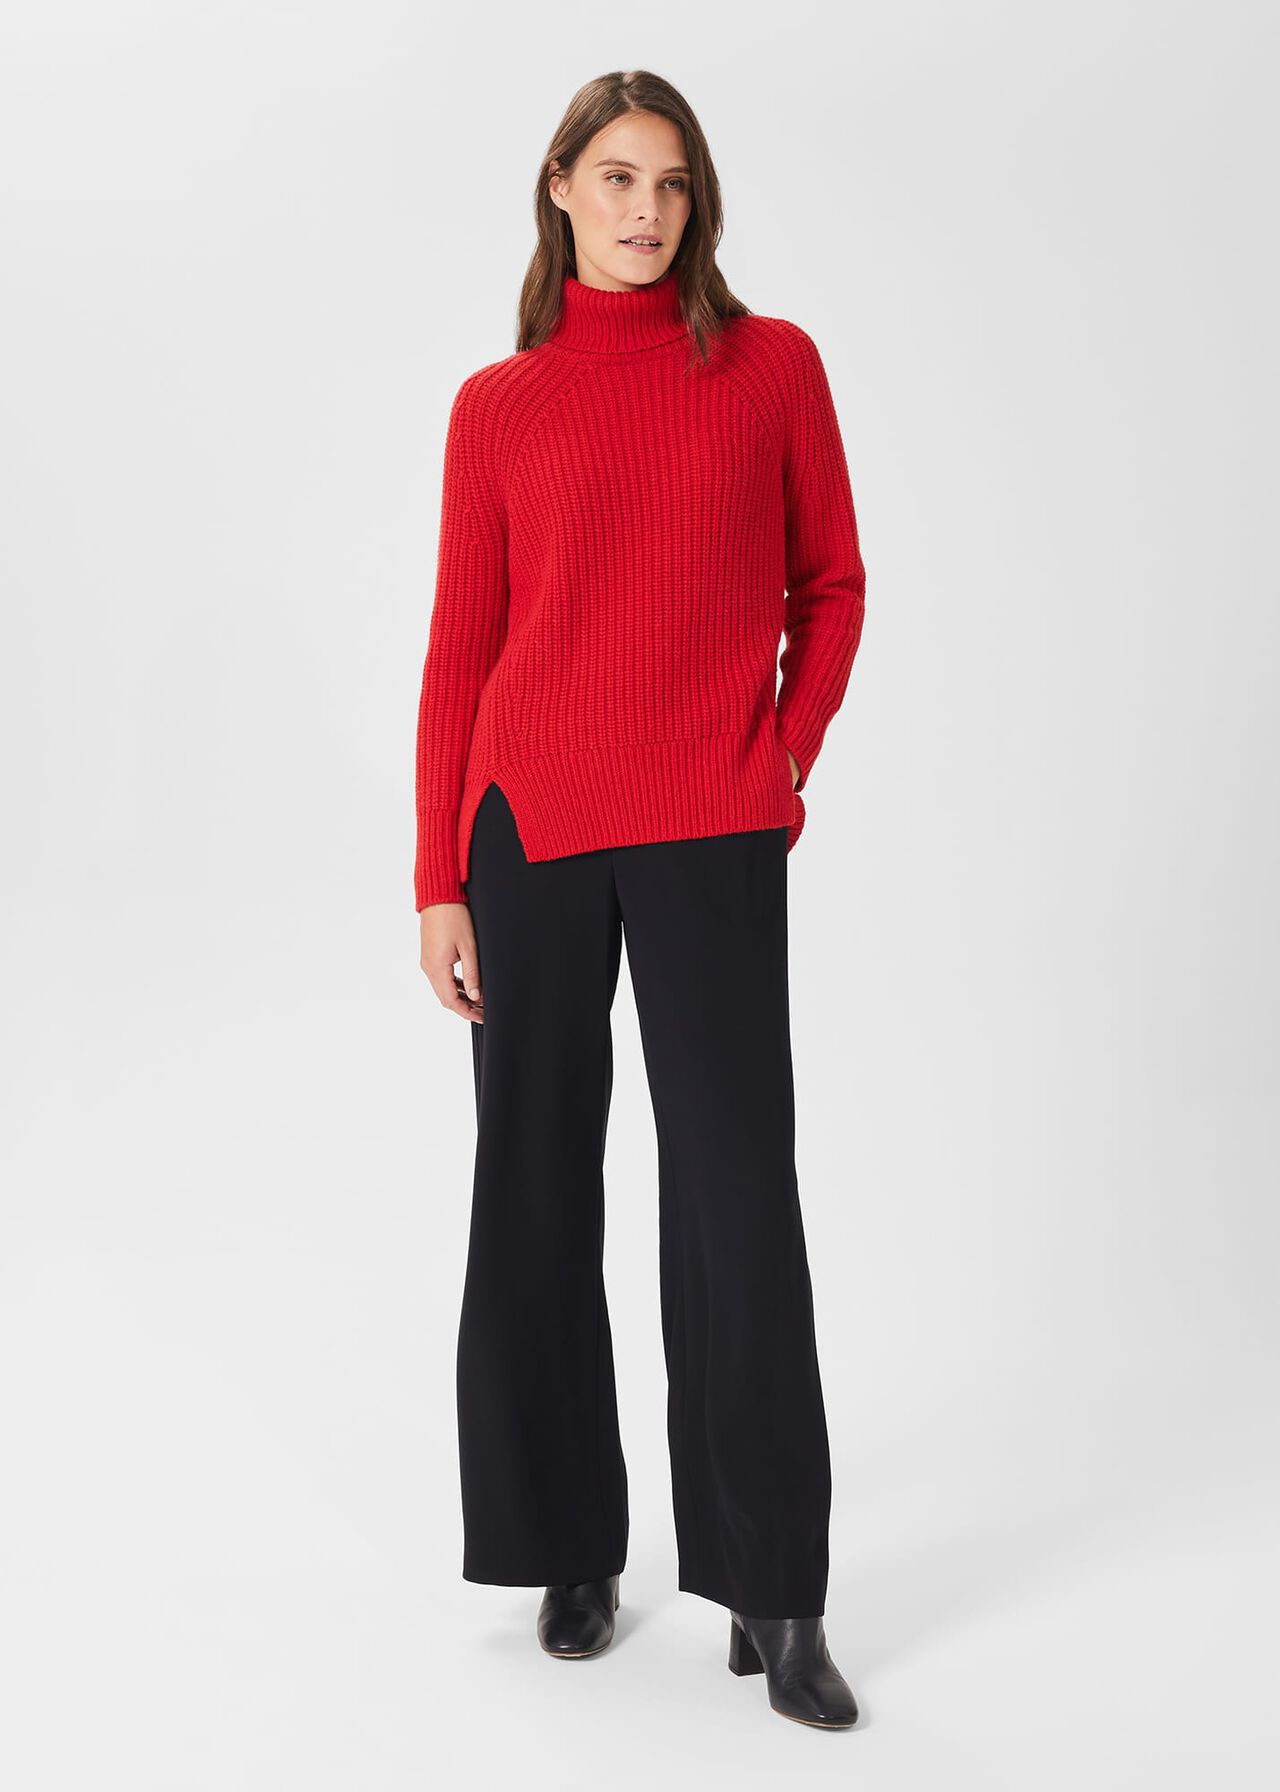 Aurelia Sweater With Alpaca, Crimson Red, hi-res